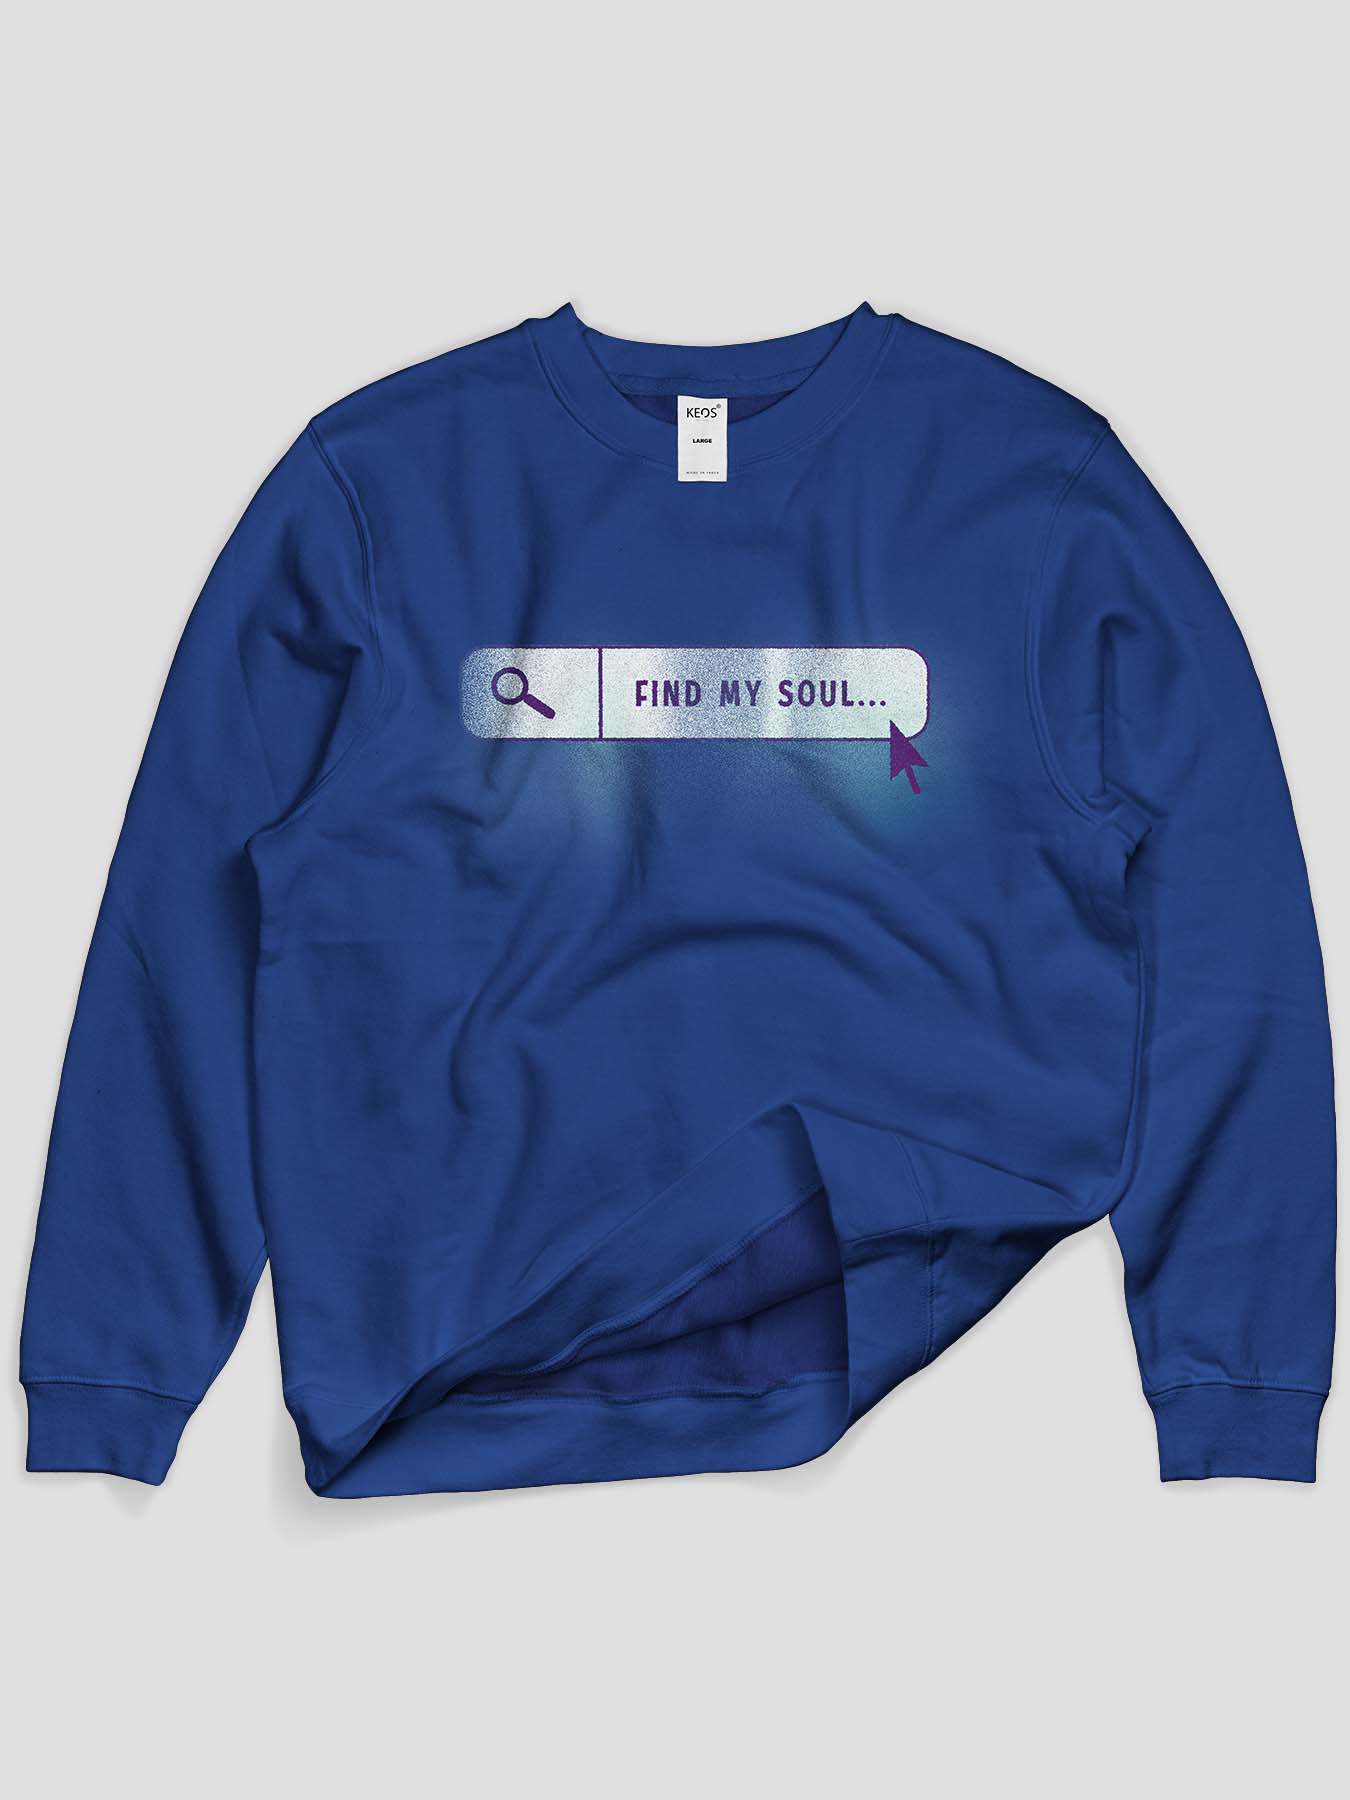 Find My Soul Printed Sweatshirt - keos.life